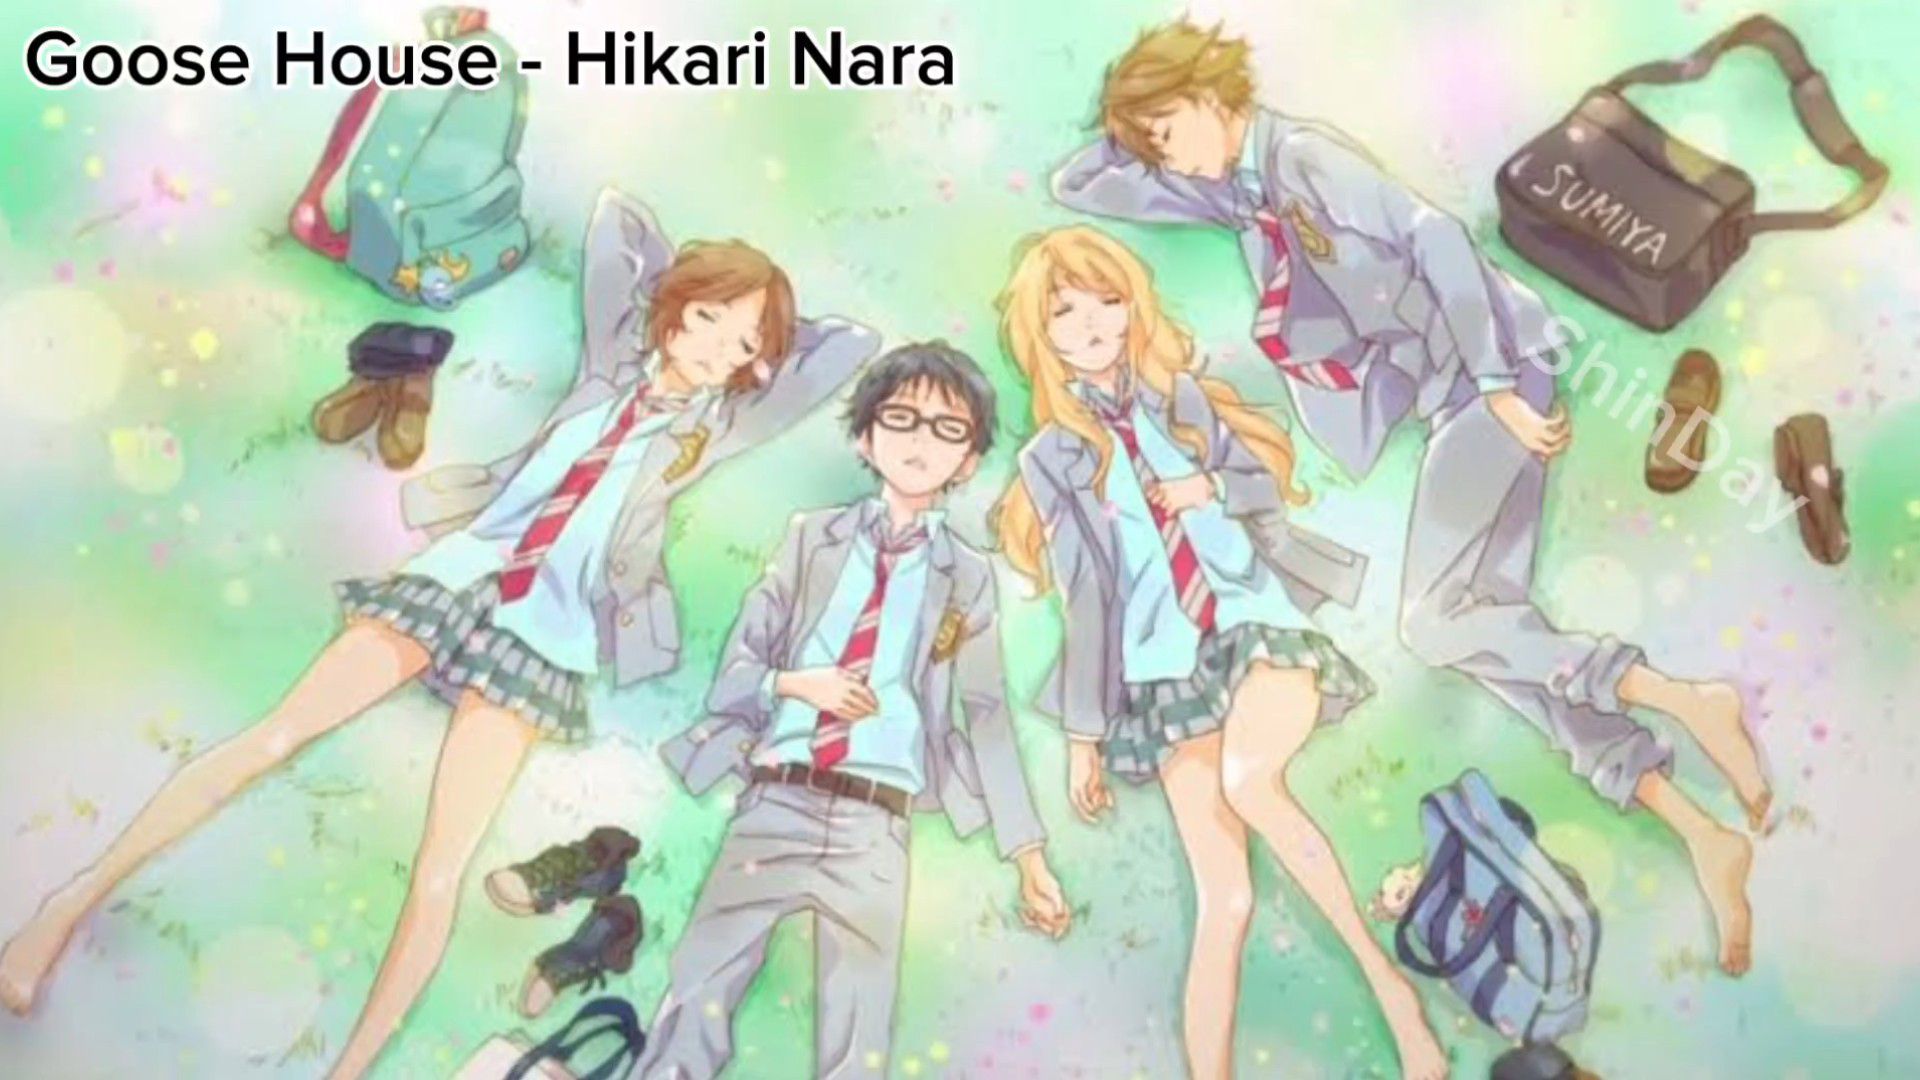 Your Lie in April OP1 - Hikaru Nara - Goose House (Anime Ukulele